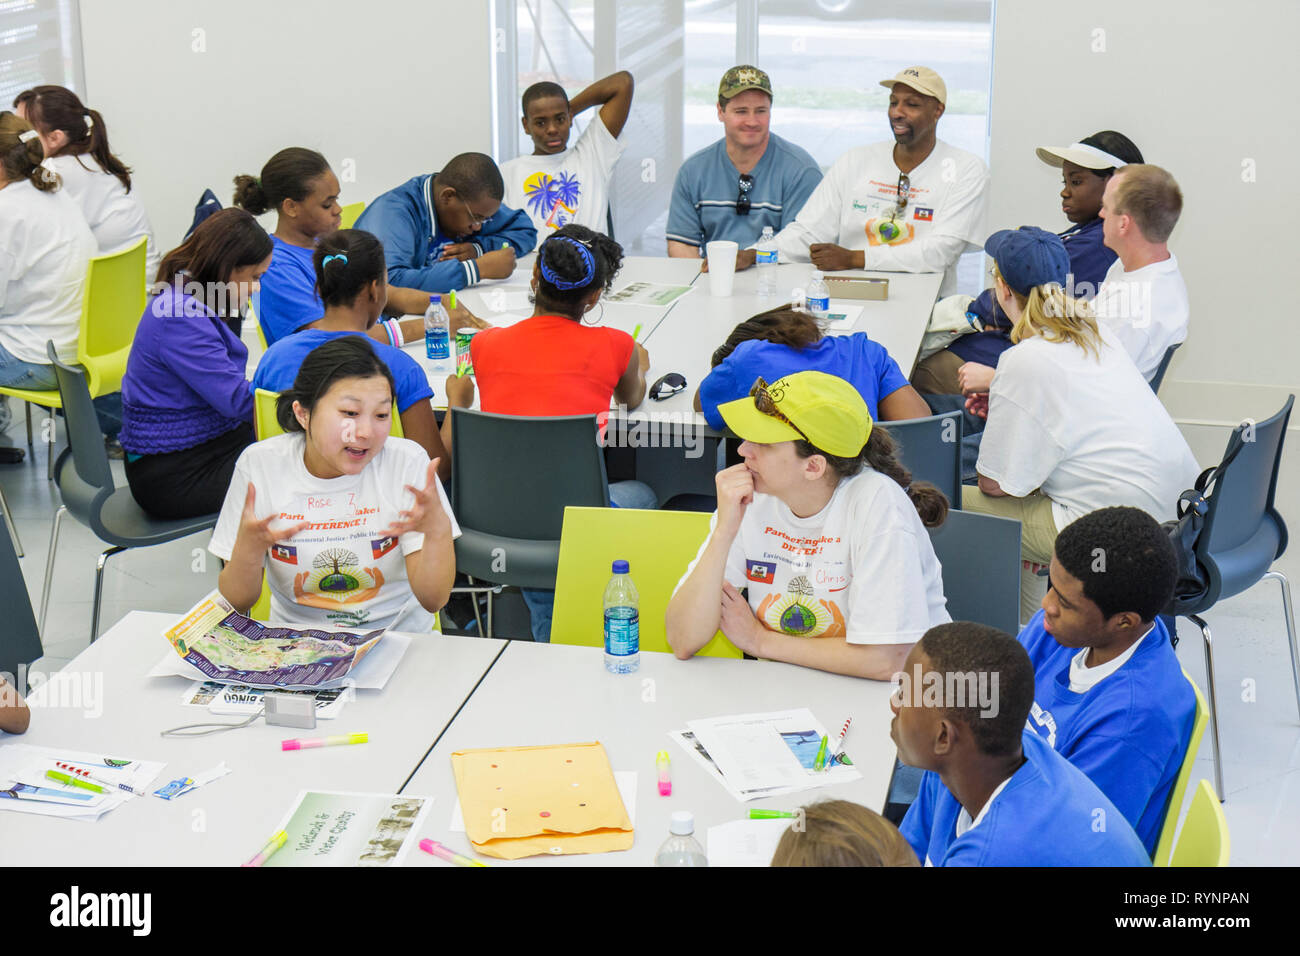 Miami Florida, Little Haiti, Centro de Complejo Cultural, Día de MLK, Día de la Comunidad de EPA, voluntarios voluntarios voluntarios trabajadores del trabajo, trabajando juntos Foto de stock